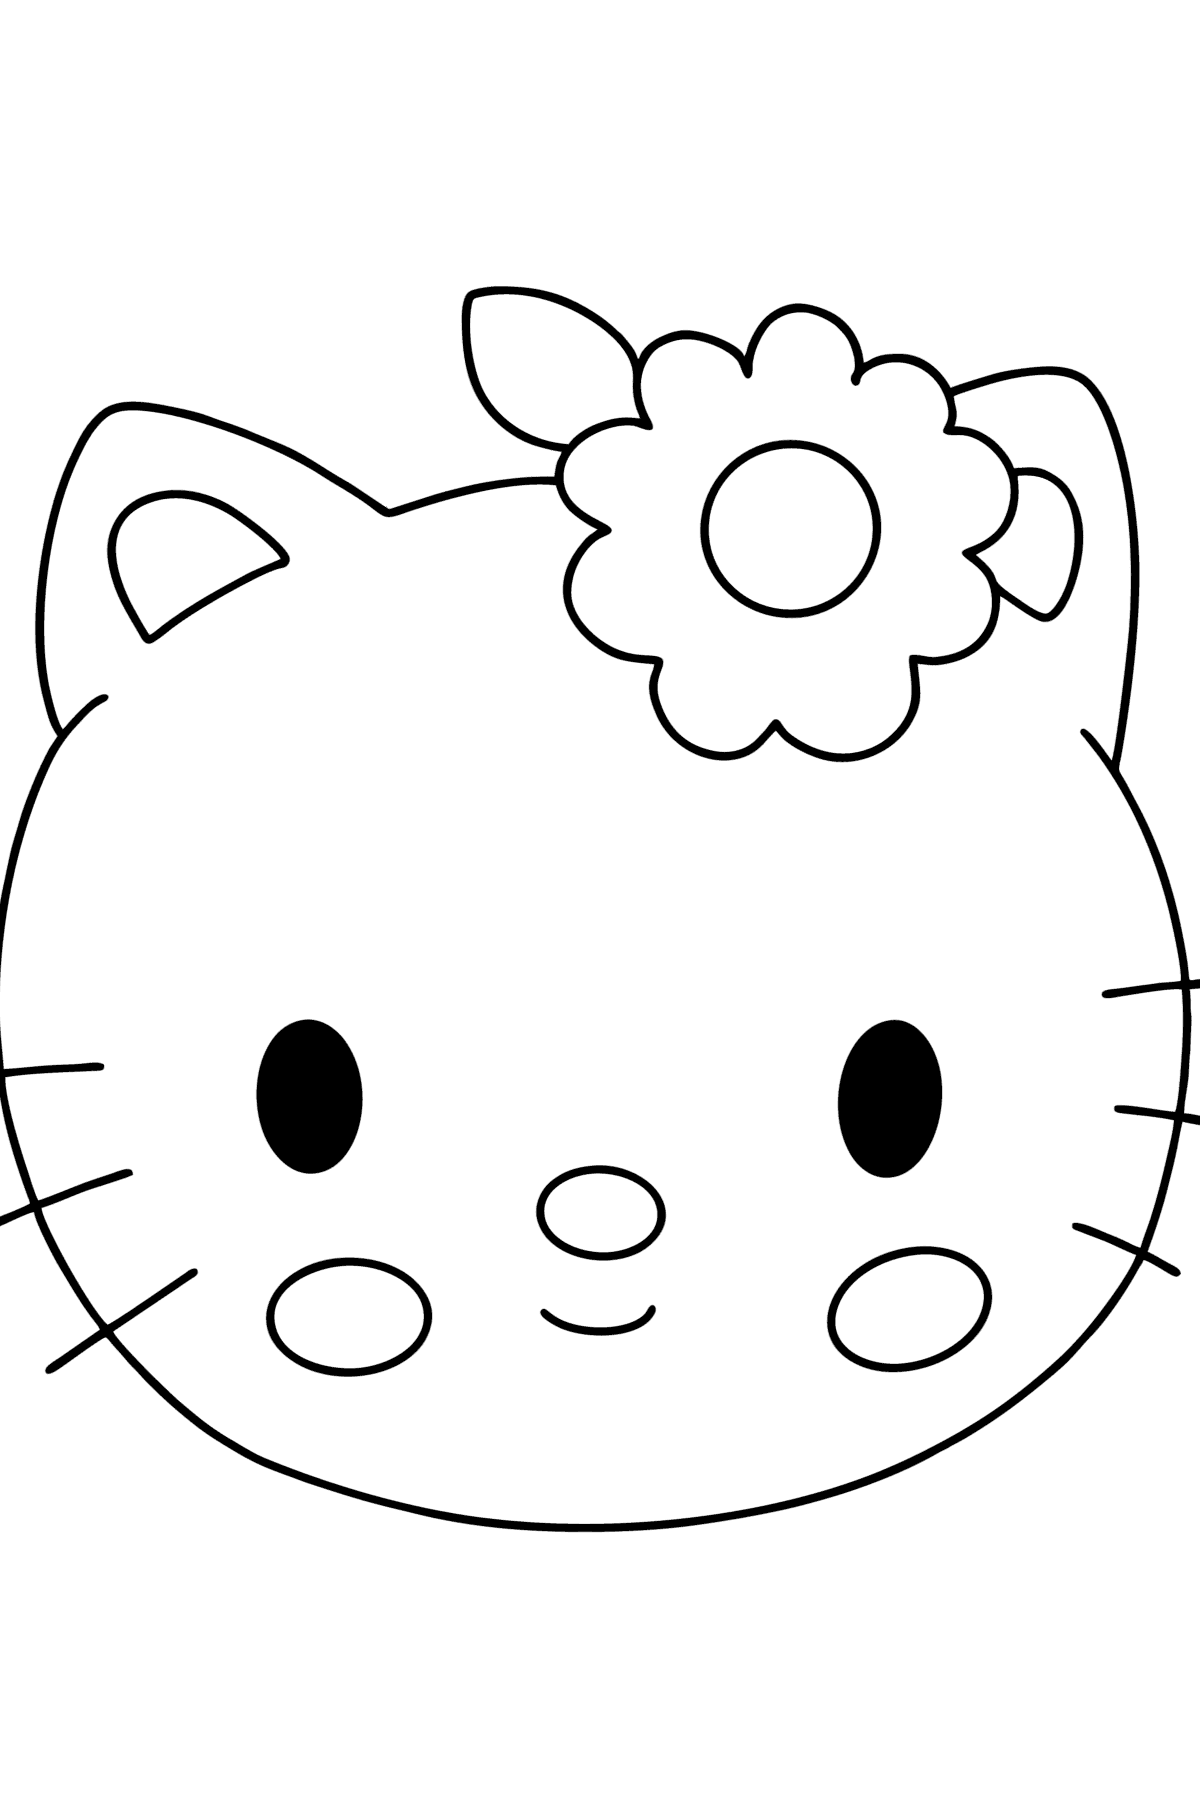 Tegning til fargelegging Hello Kitty snuteparti - Tegninger til fargelegging for barn